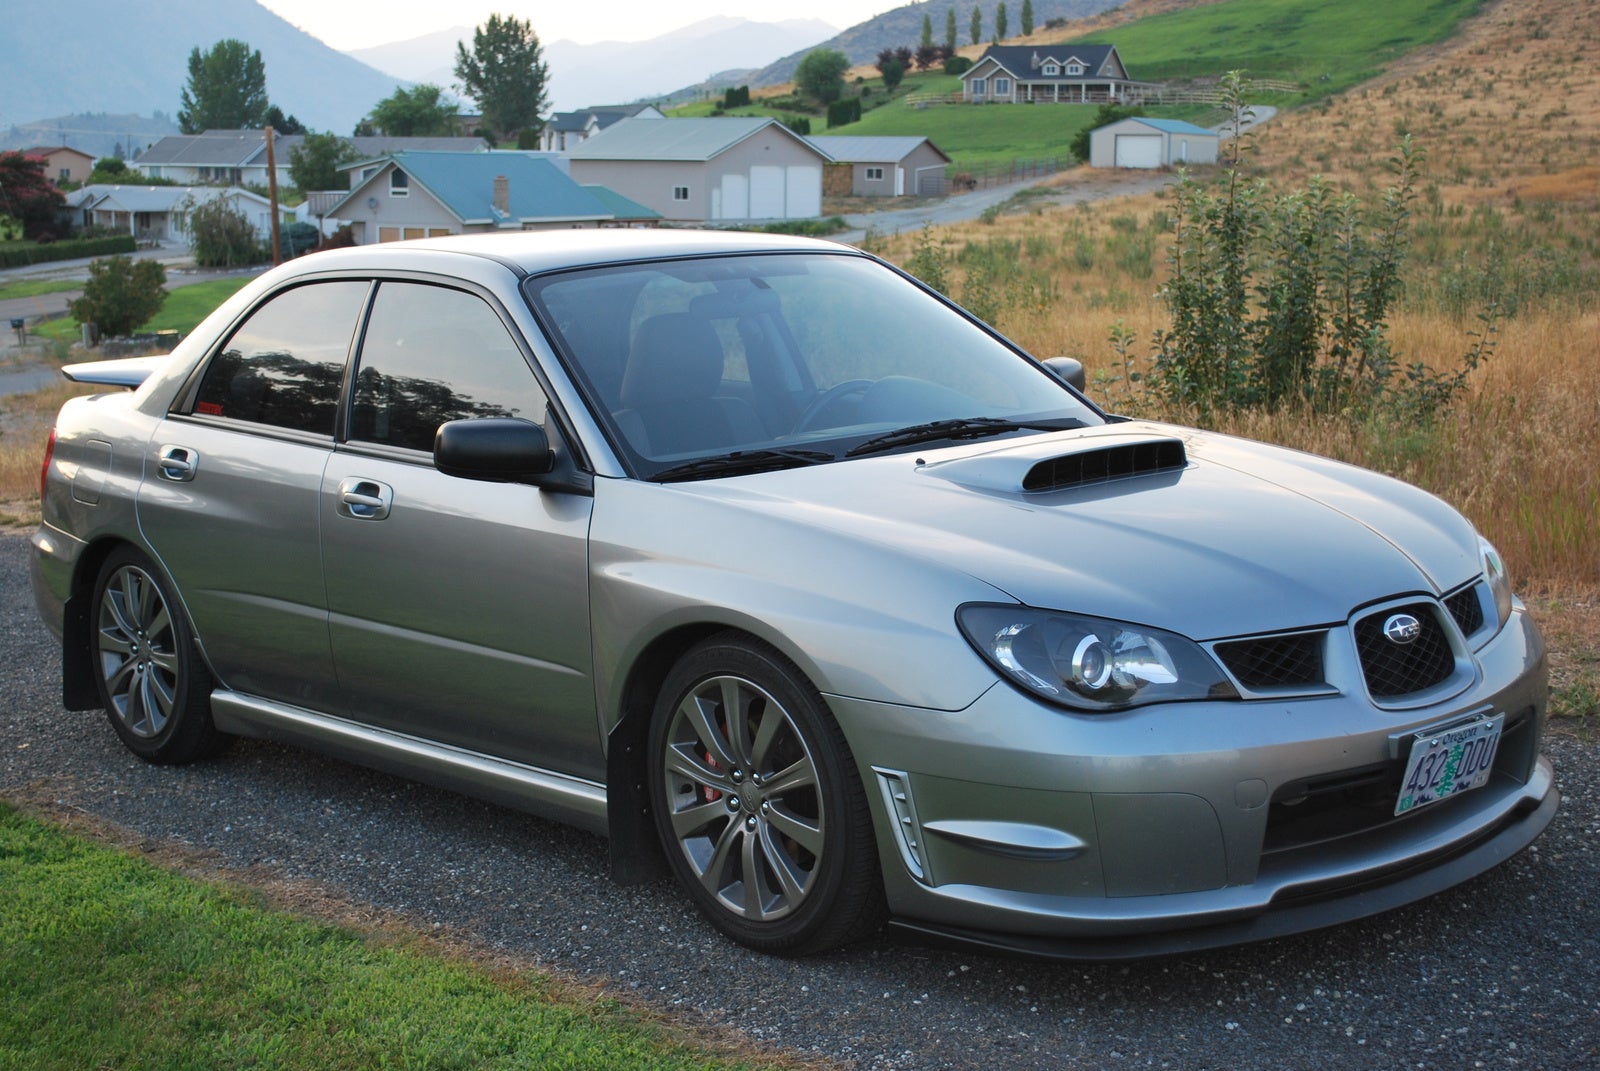 2007 Subaru Impreza Pictures CarGurus